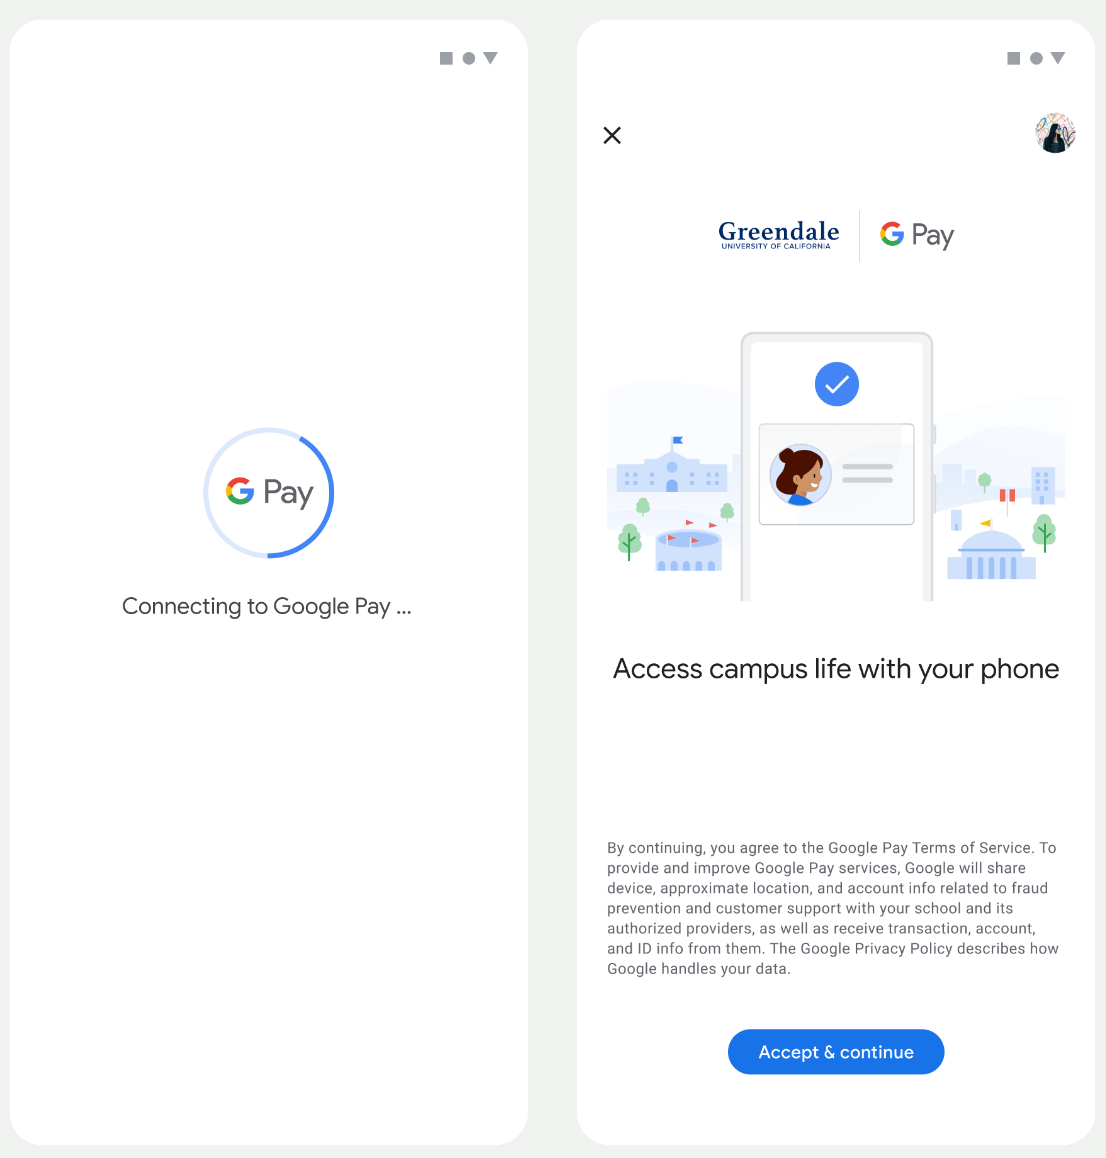 最初の画面では、アプリが Google ウォレットに接続します。次の画面で、ユーザーは利用規約に同意し、続行します。